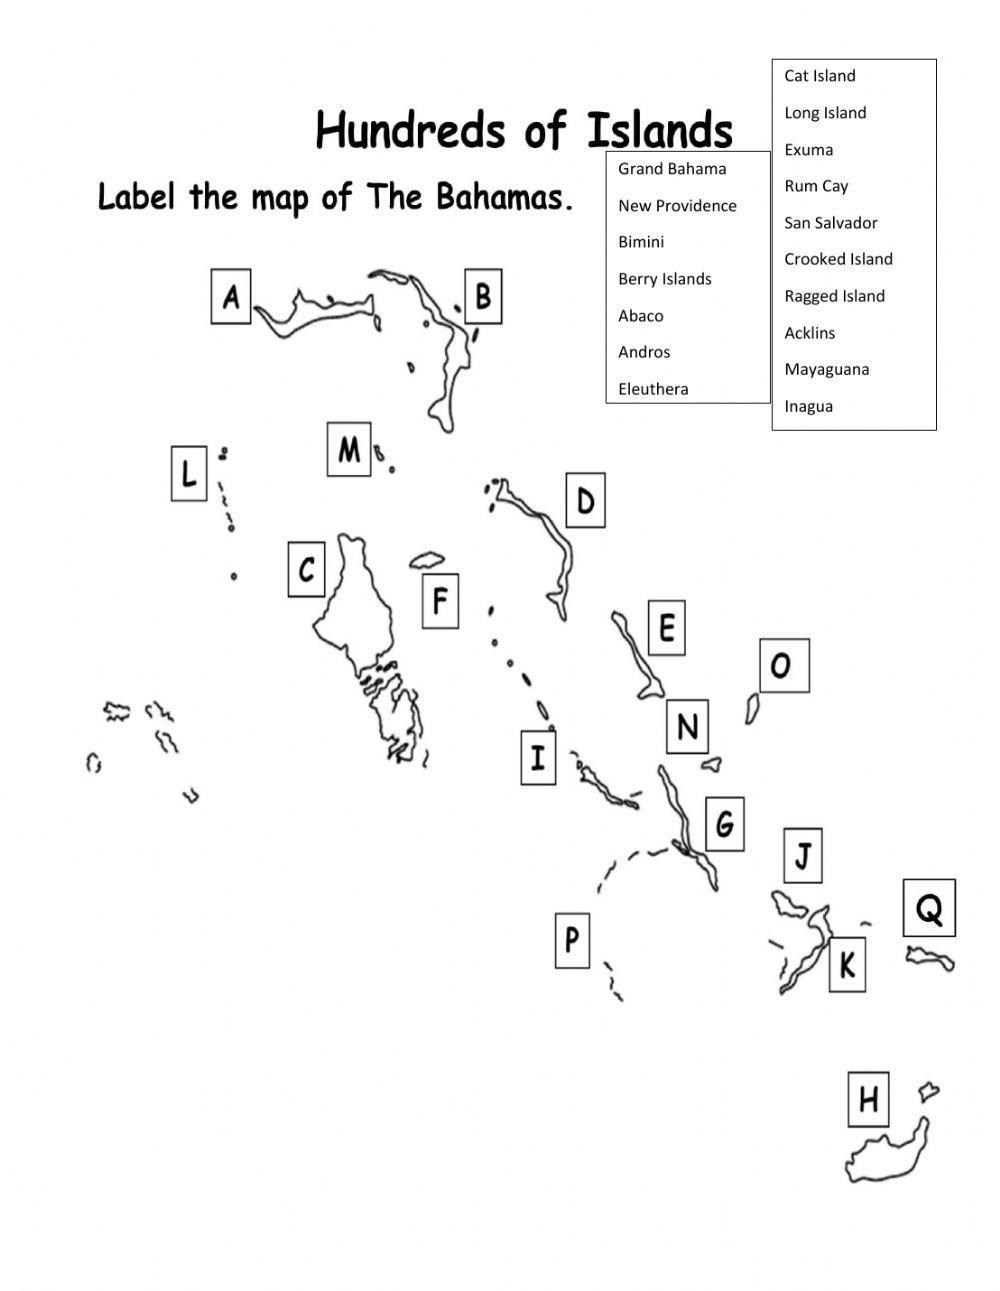 Island of The Bahamas